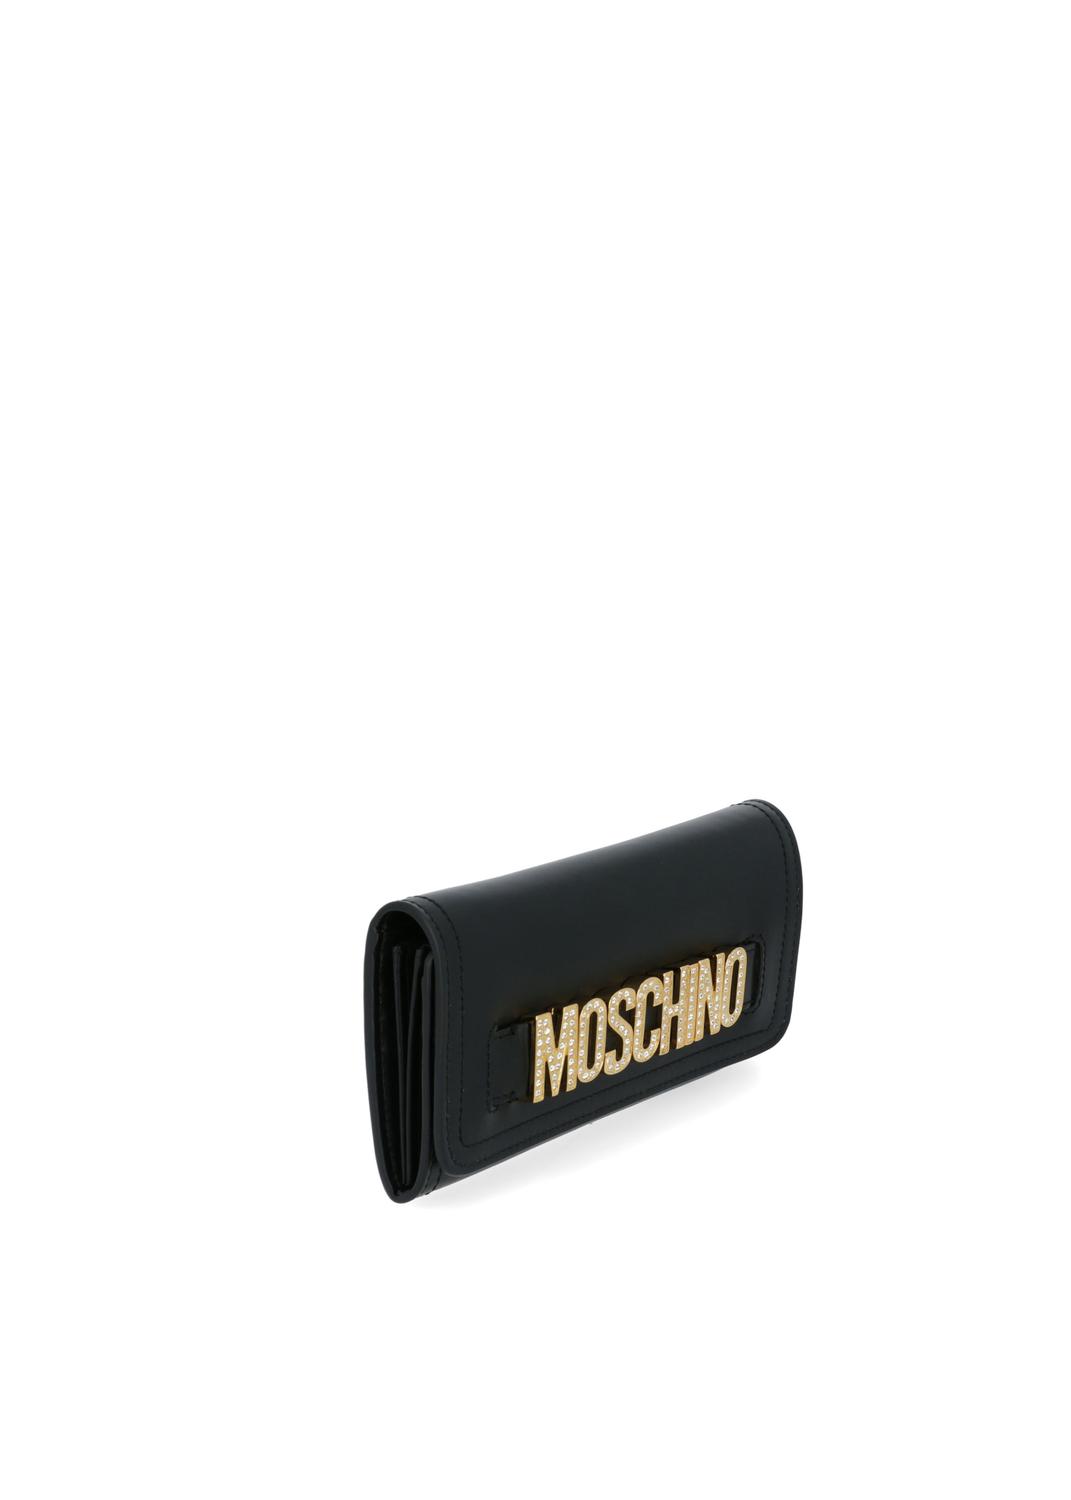 Moschino bolso crossbody con logo MSC-A8135